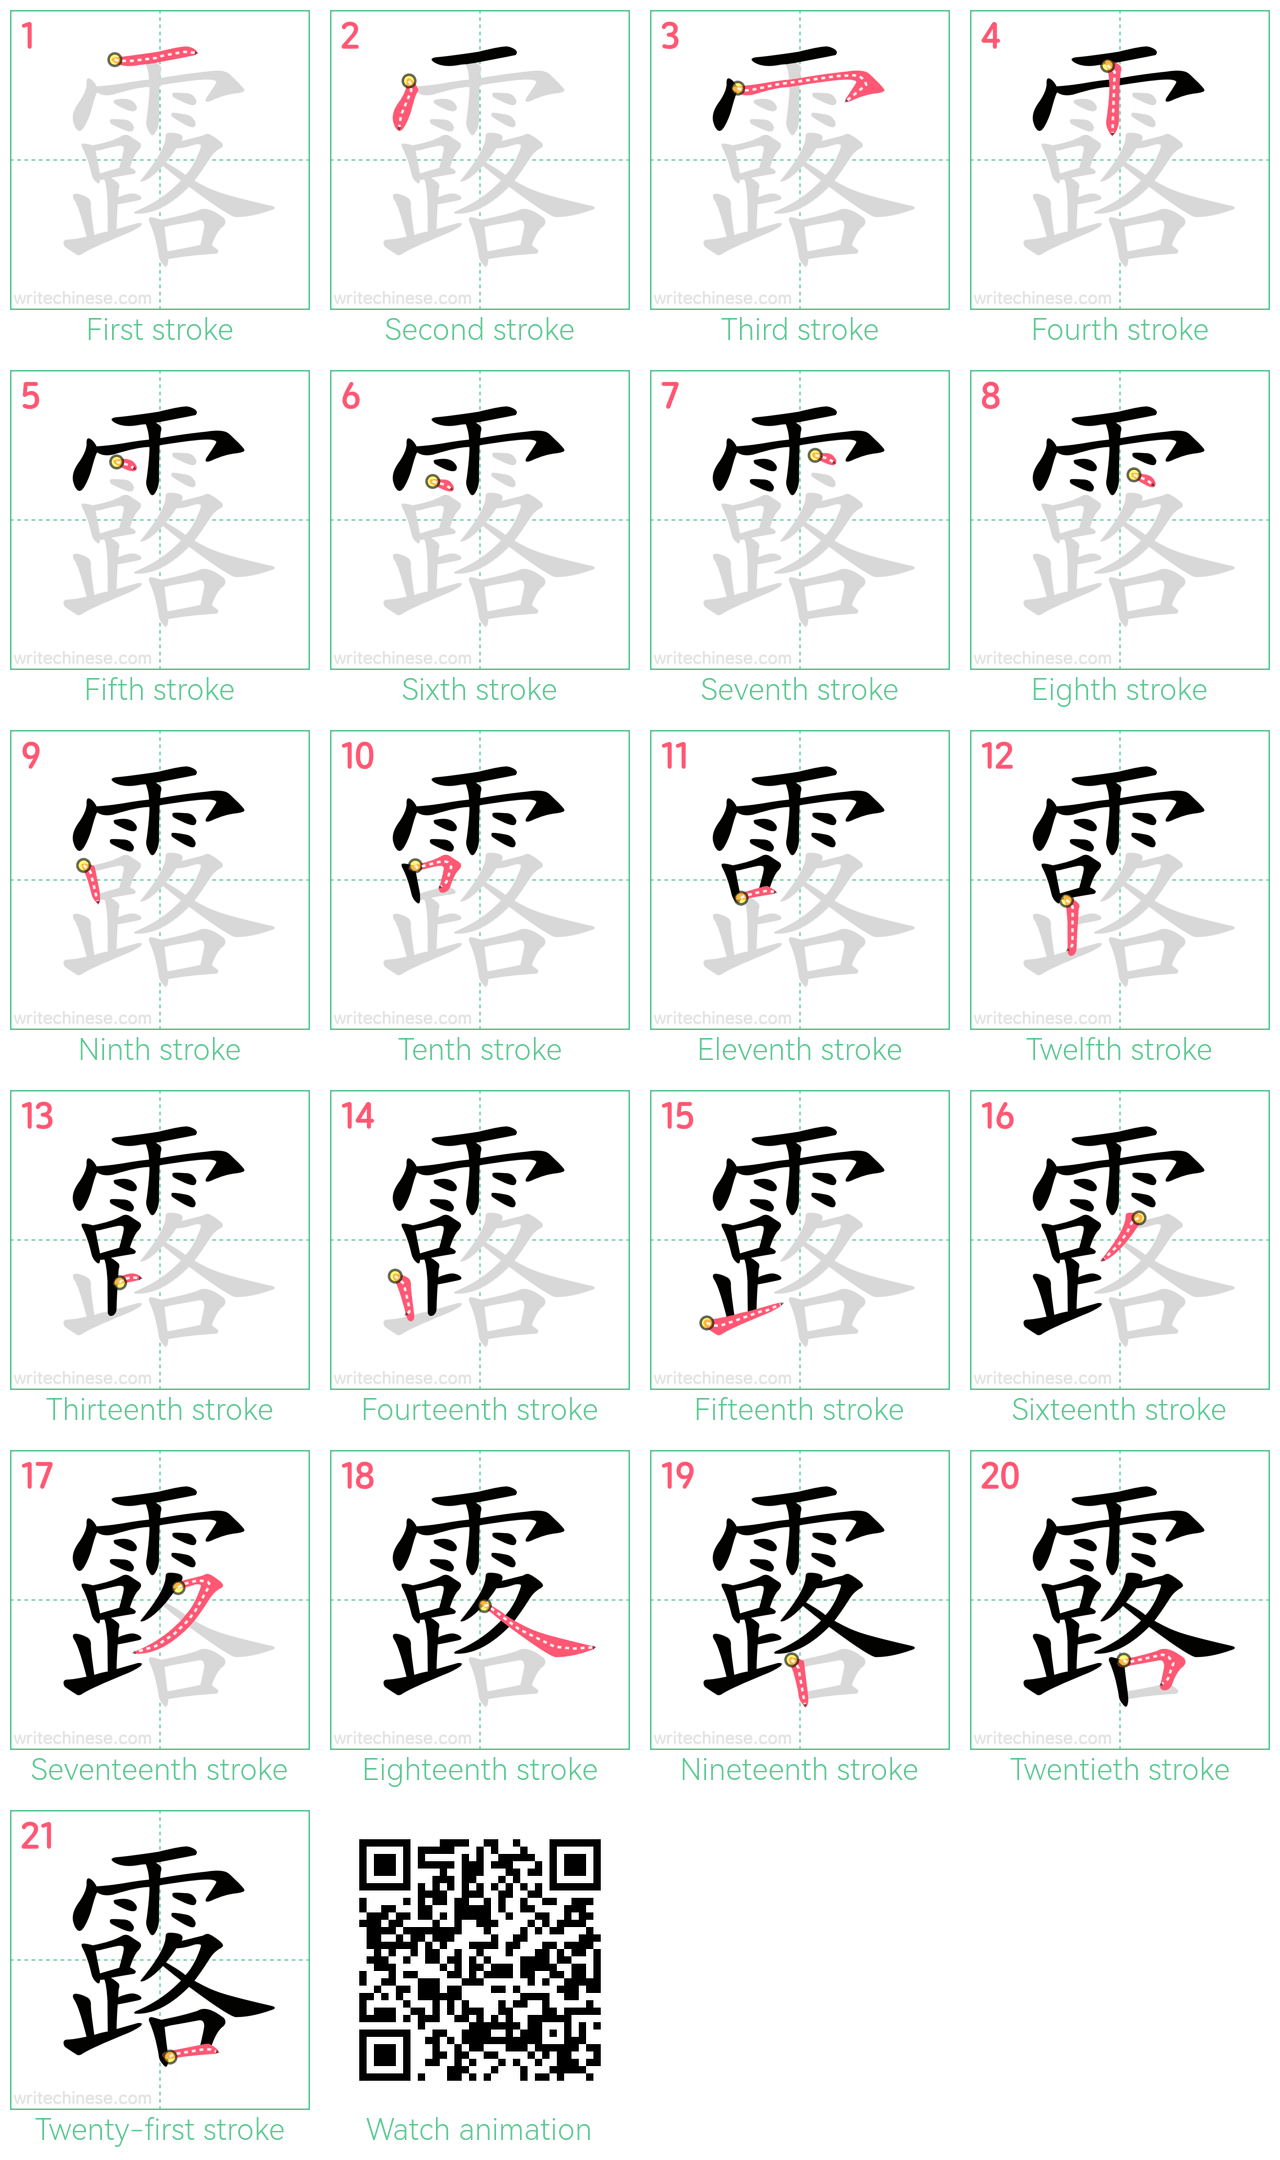 露 step-by-step stroke order diagrams